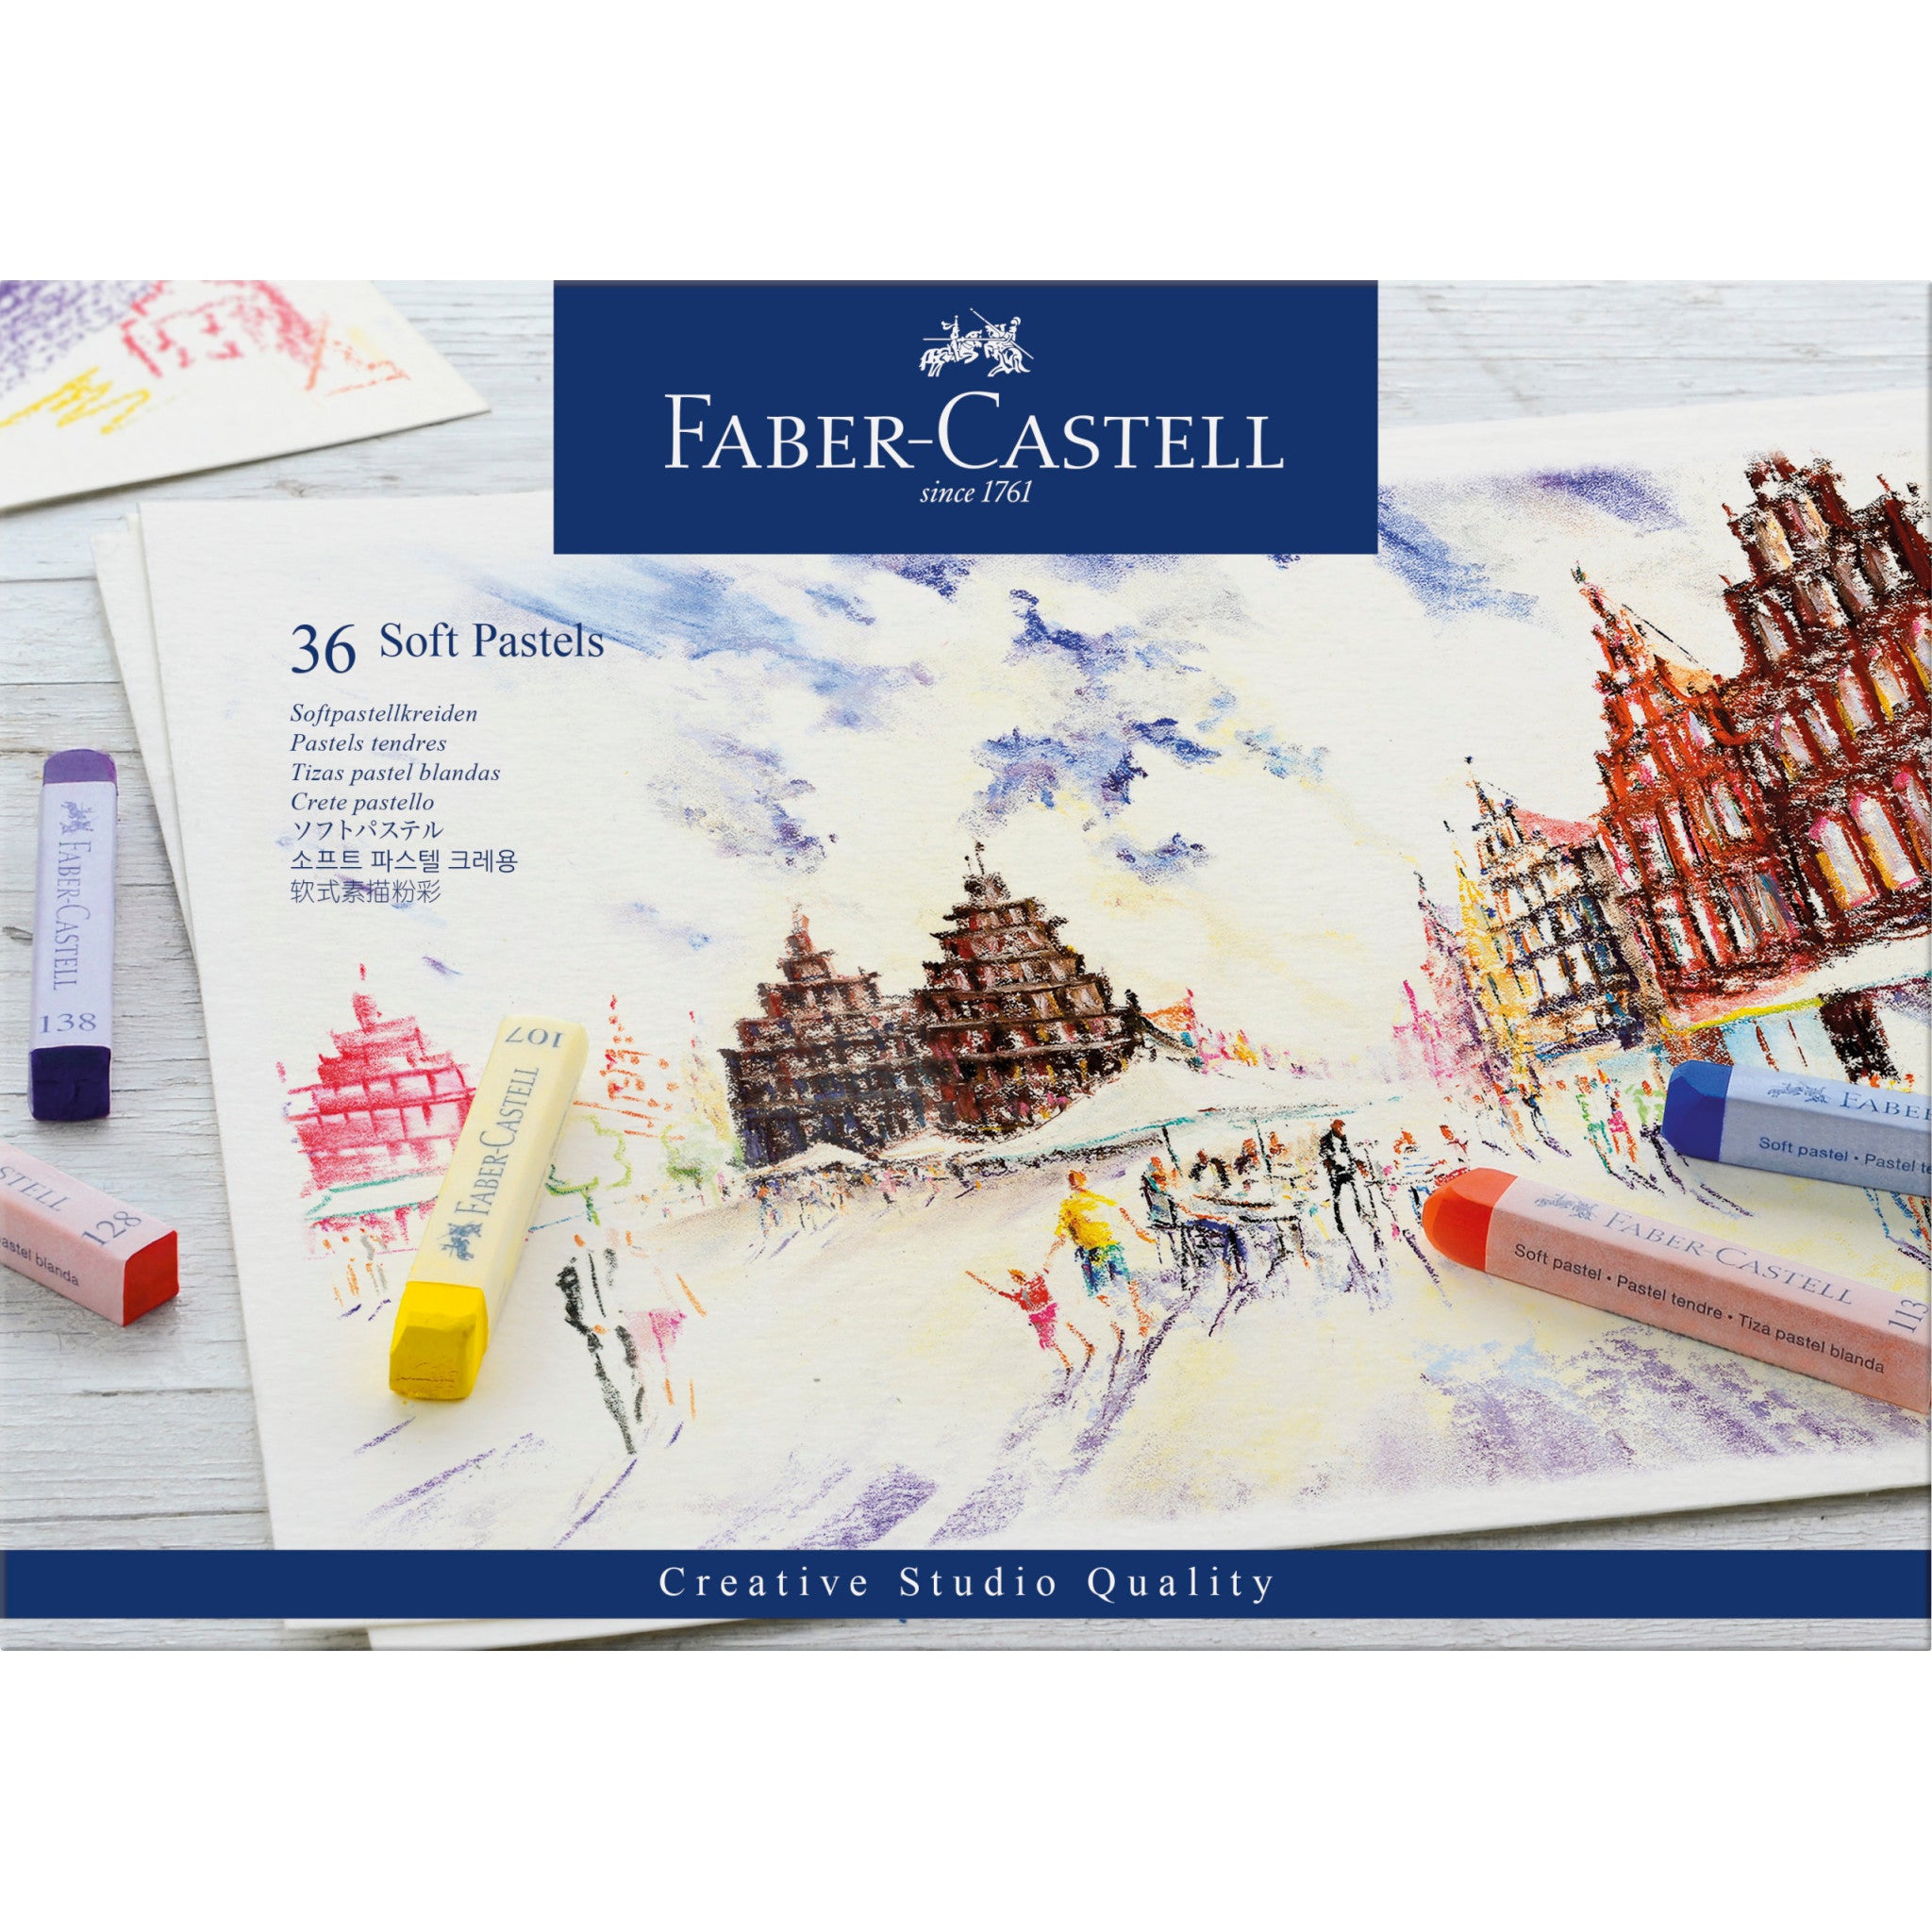 Lapices de color largos acuarelables PASTEL x10 unidades Faber-Castell